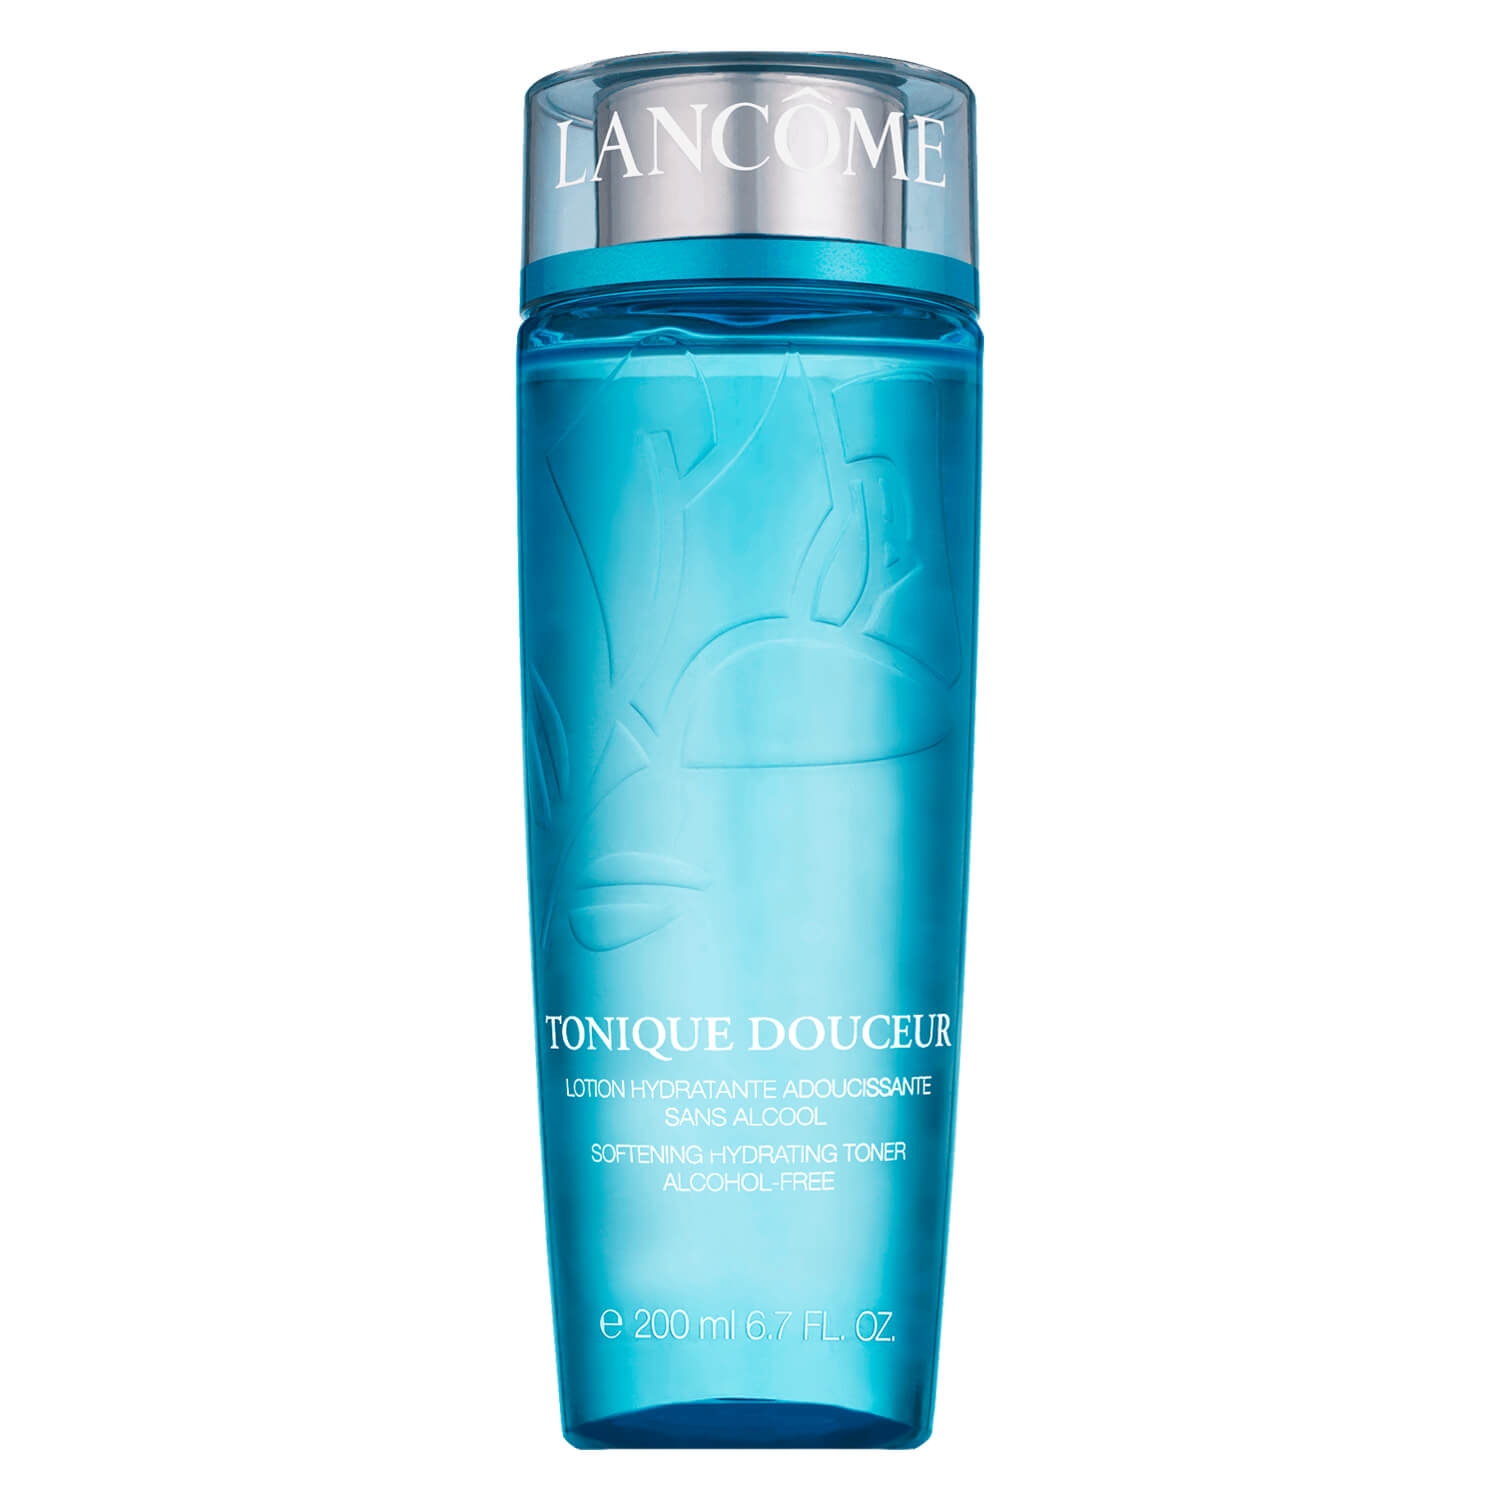 Product image from Lancôme Skin - Tonique Douceur